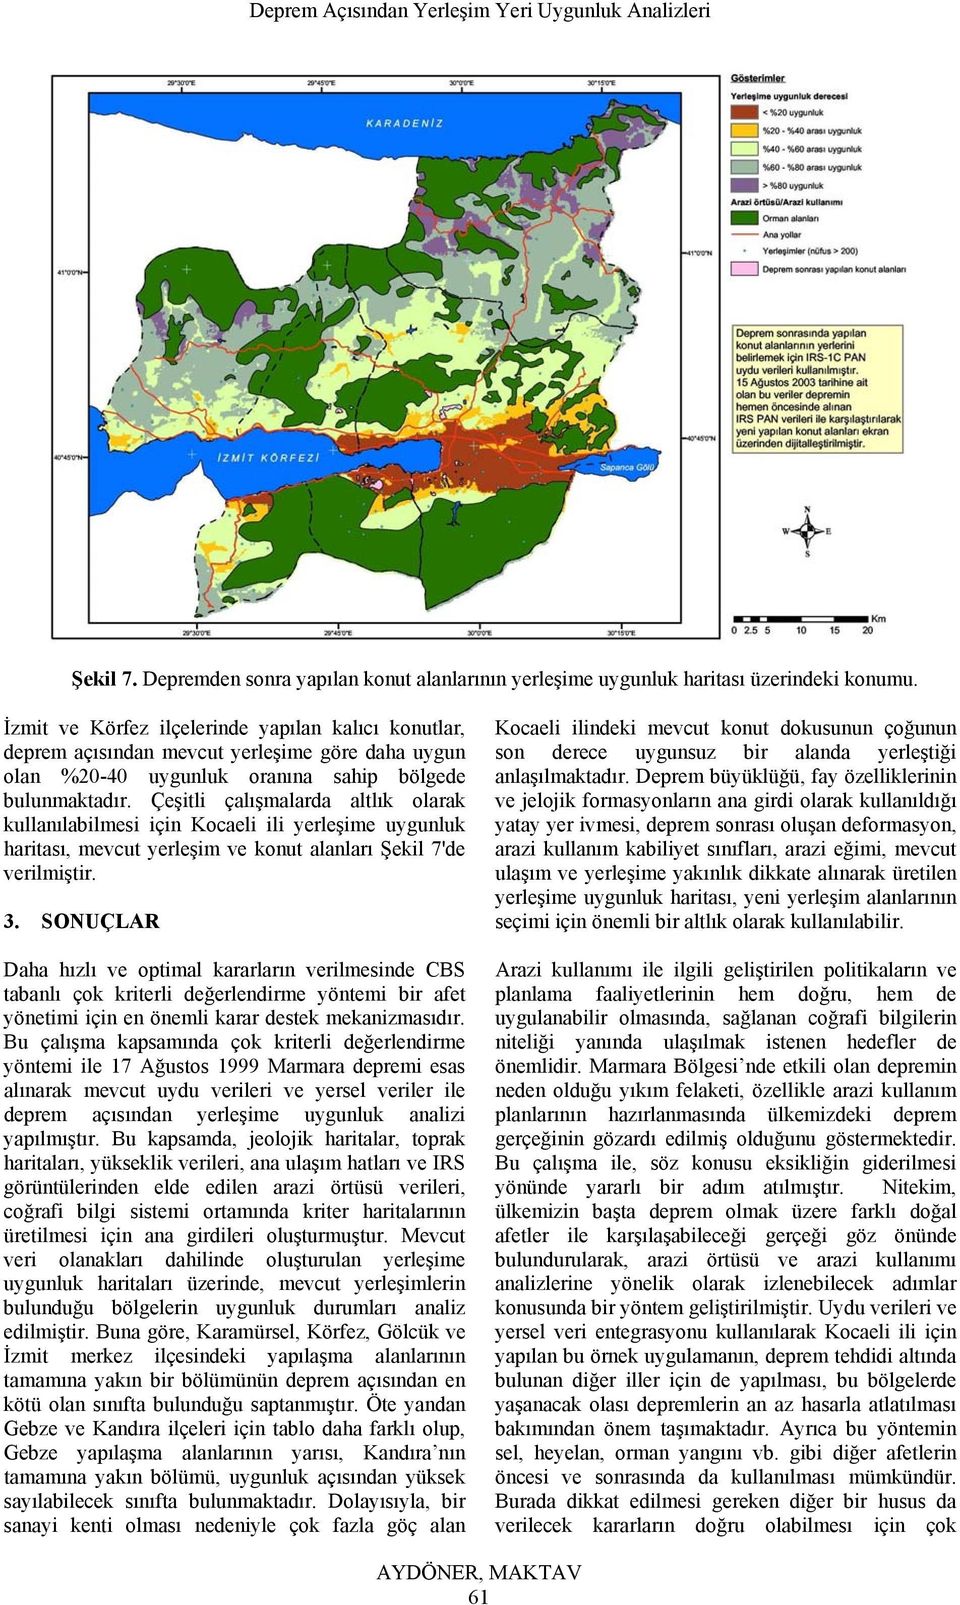 Çeşitli çalışmalarda altlık olarak kullanılabilmesi için Kocaeli ili yerleşime uygunluk haritası, mevcut yerleşim ve konut alanları Şekil 7'de verilmiştir. 3.